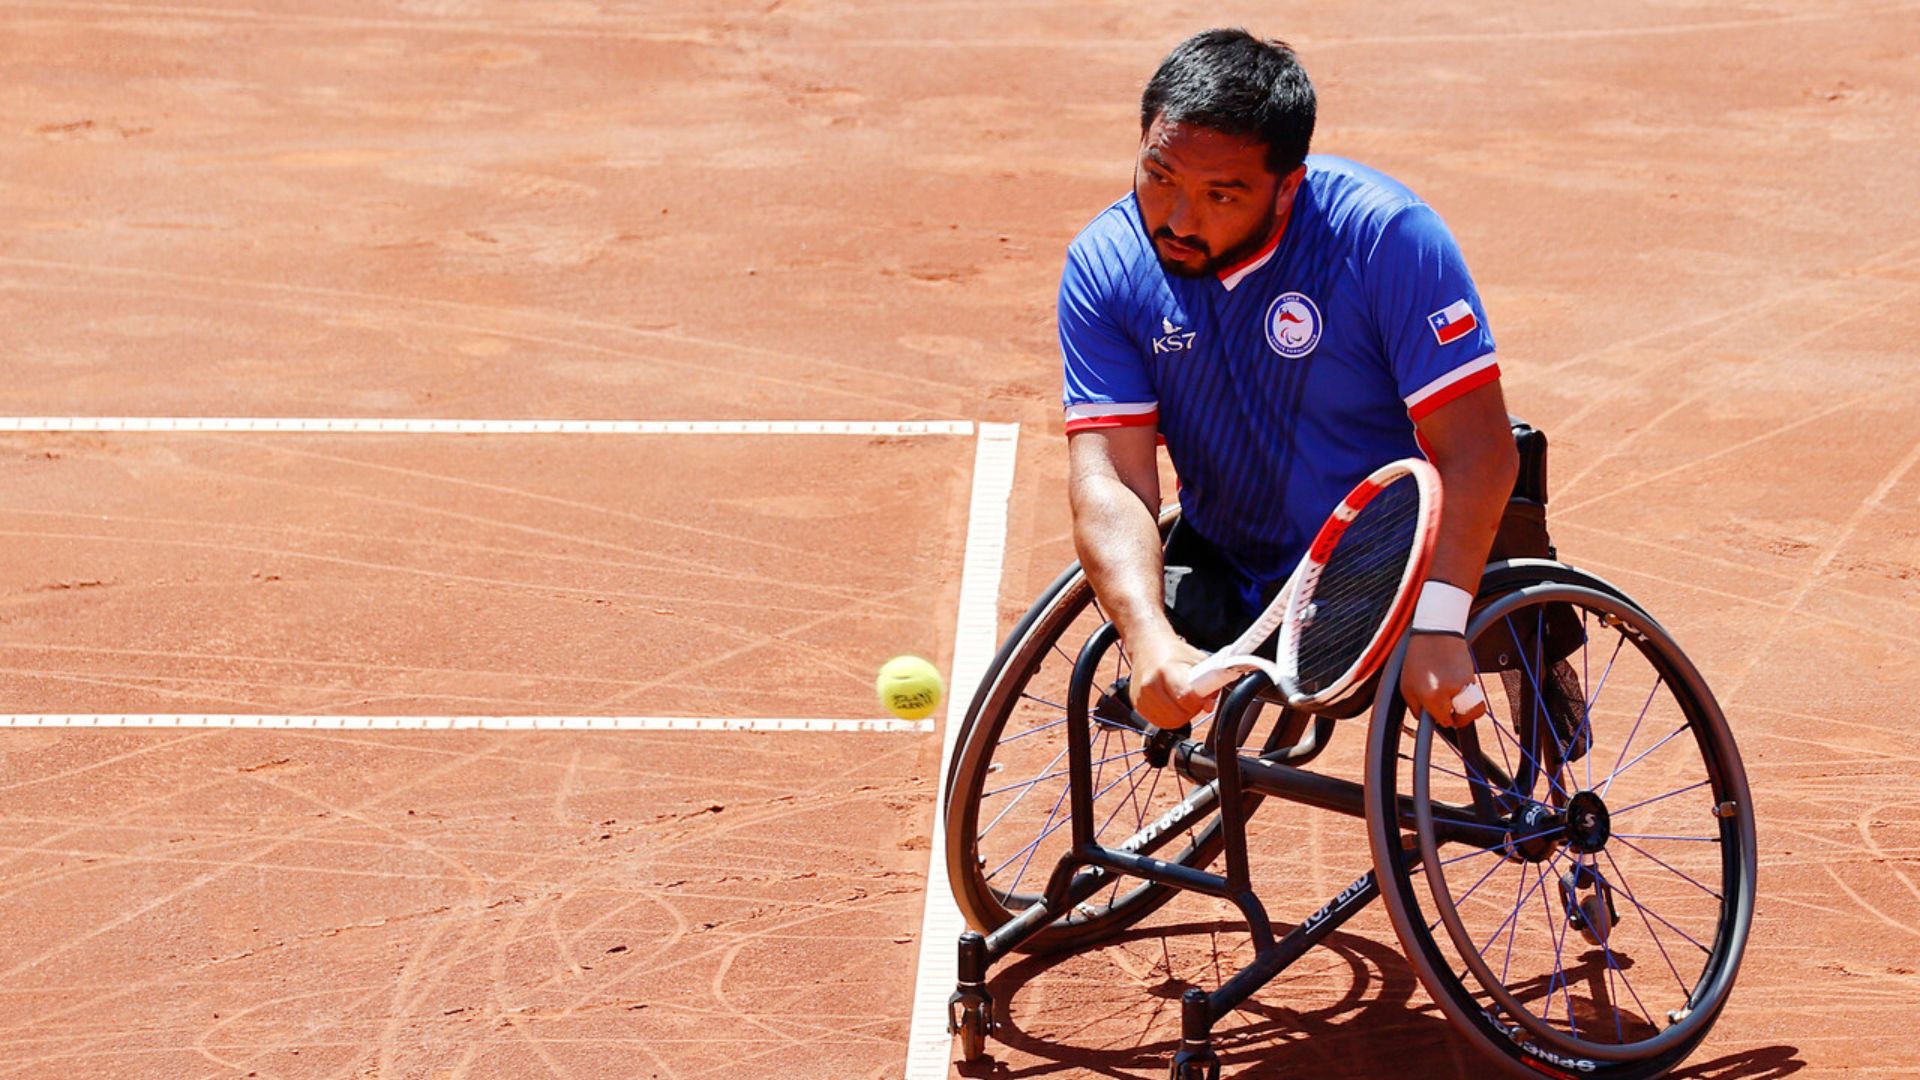 Tenis en silla de ruedas: Francisco Cayulef ganó otra medalla de oro para Chile